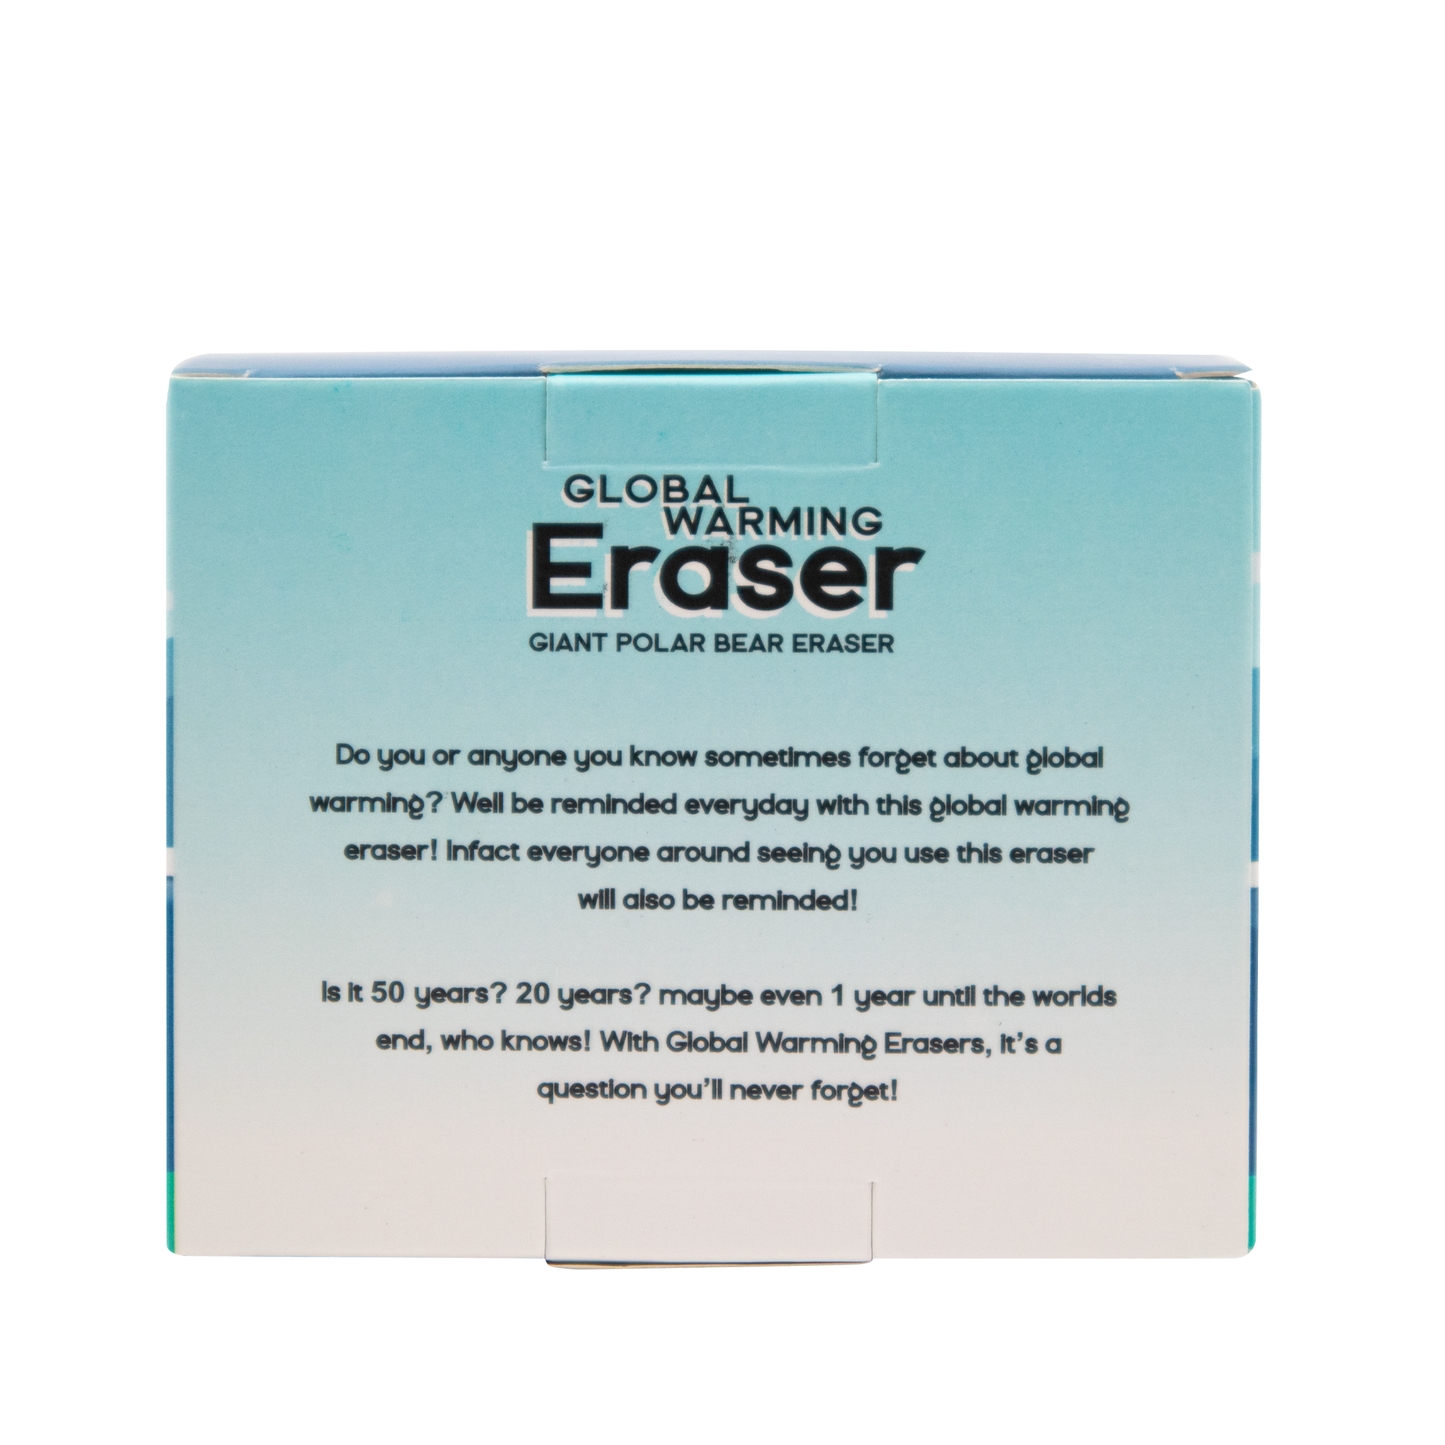 Global Warming Eraser